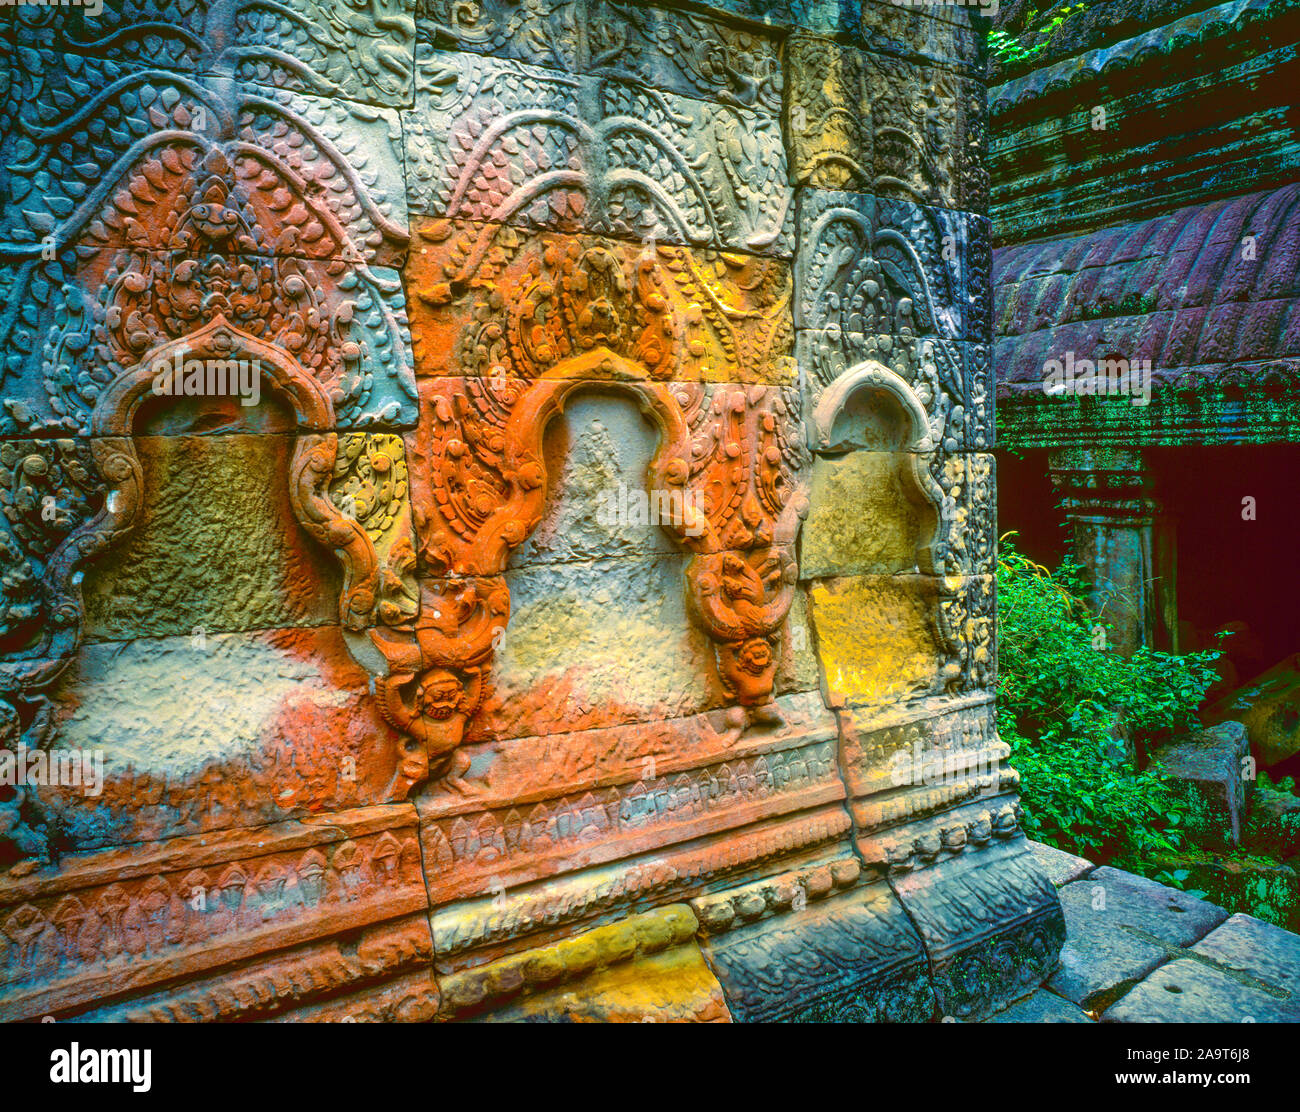 Détails temple coloré au parc archéologique d'Angkor Warr, Cambodge, construit en 1186, la gauche dans les tâches d'état, Khmers ruines de la culture en Asie du Sud-Est j Banque D'Images